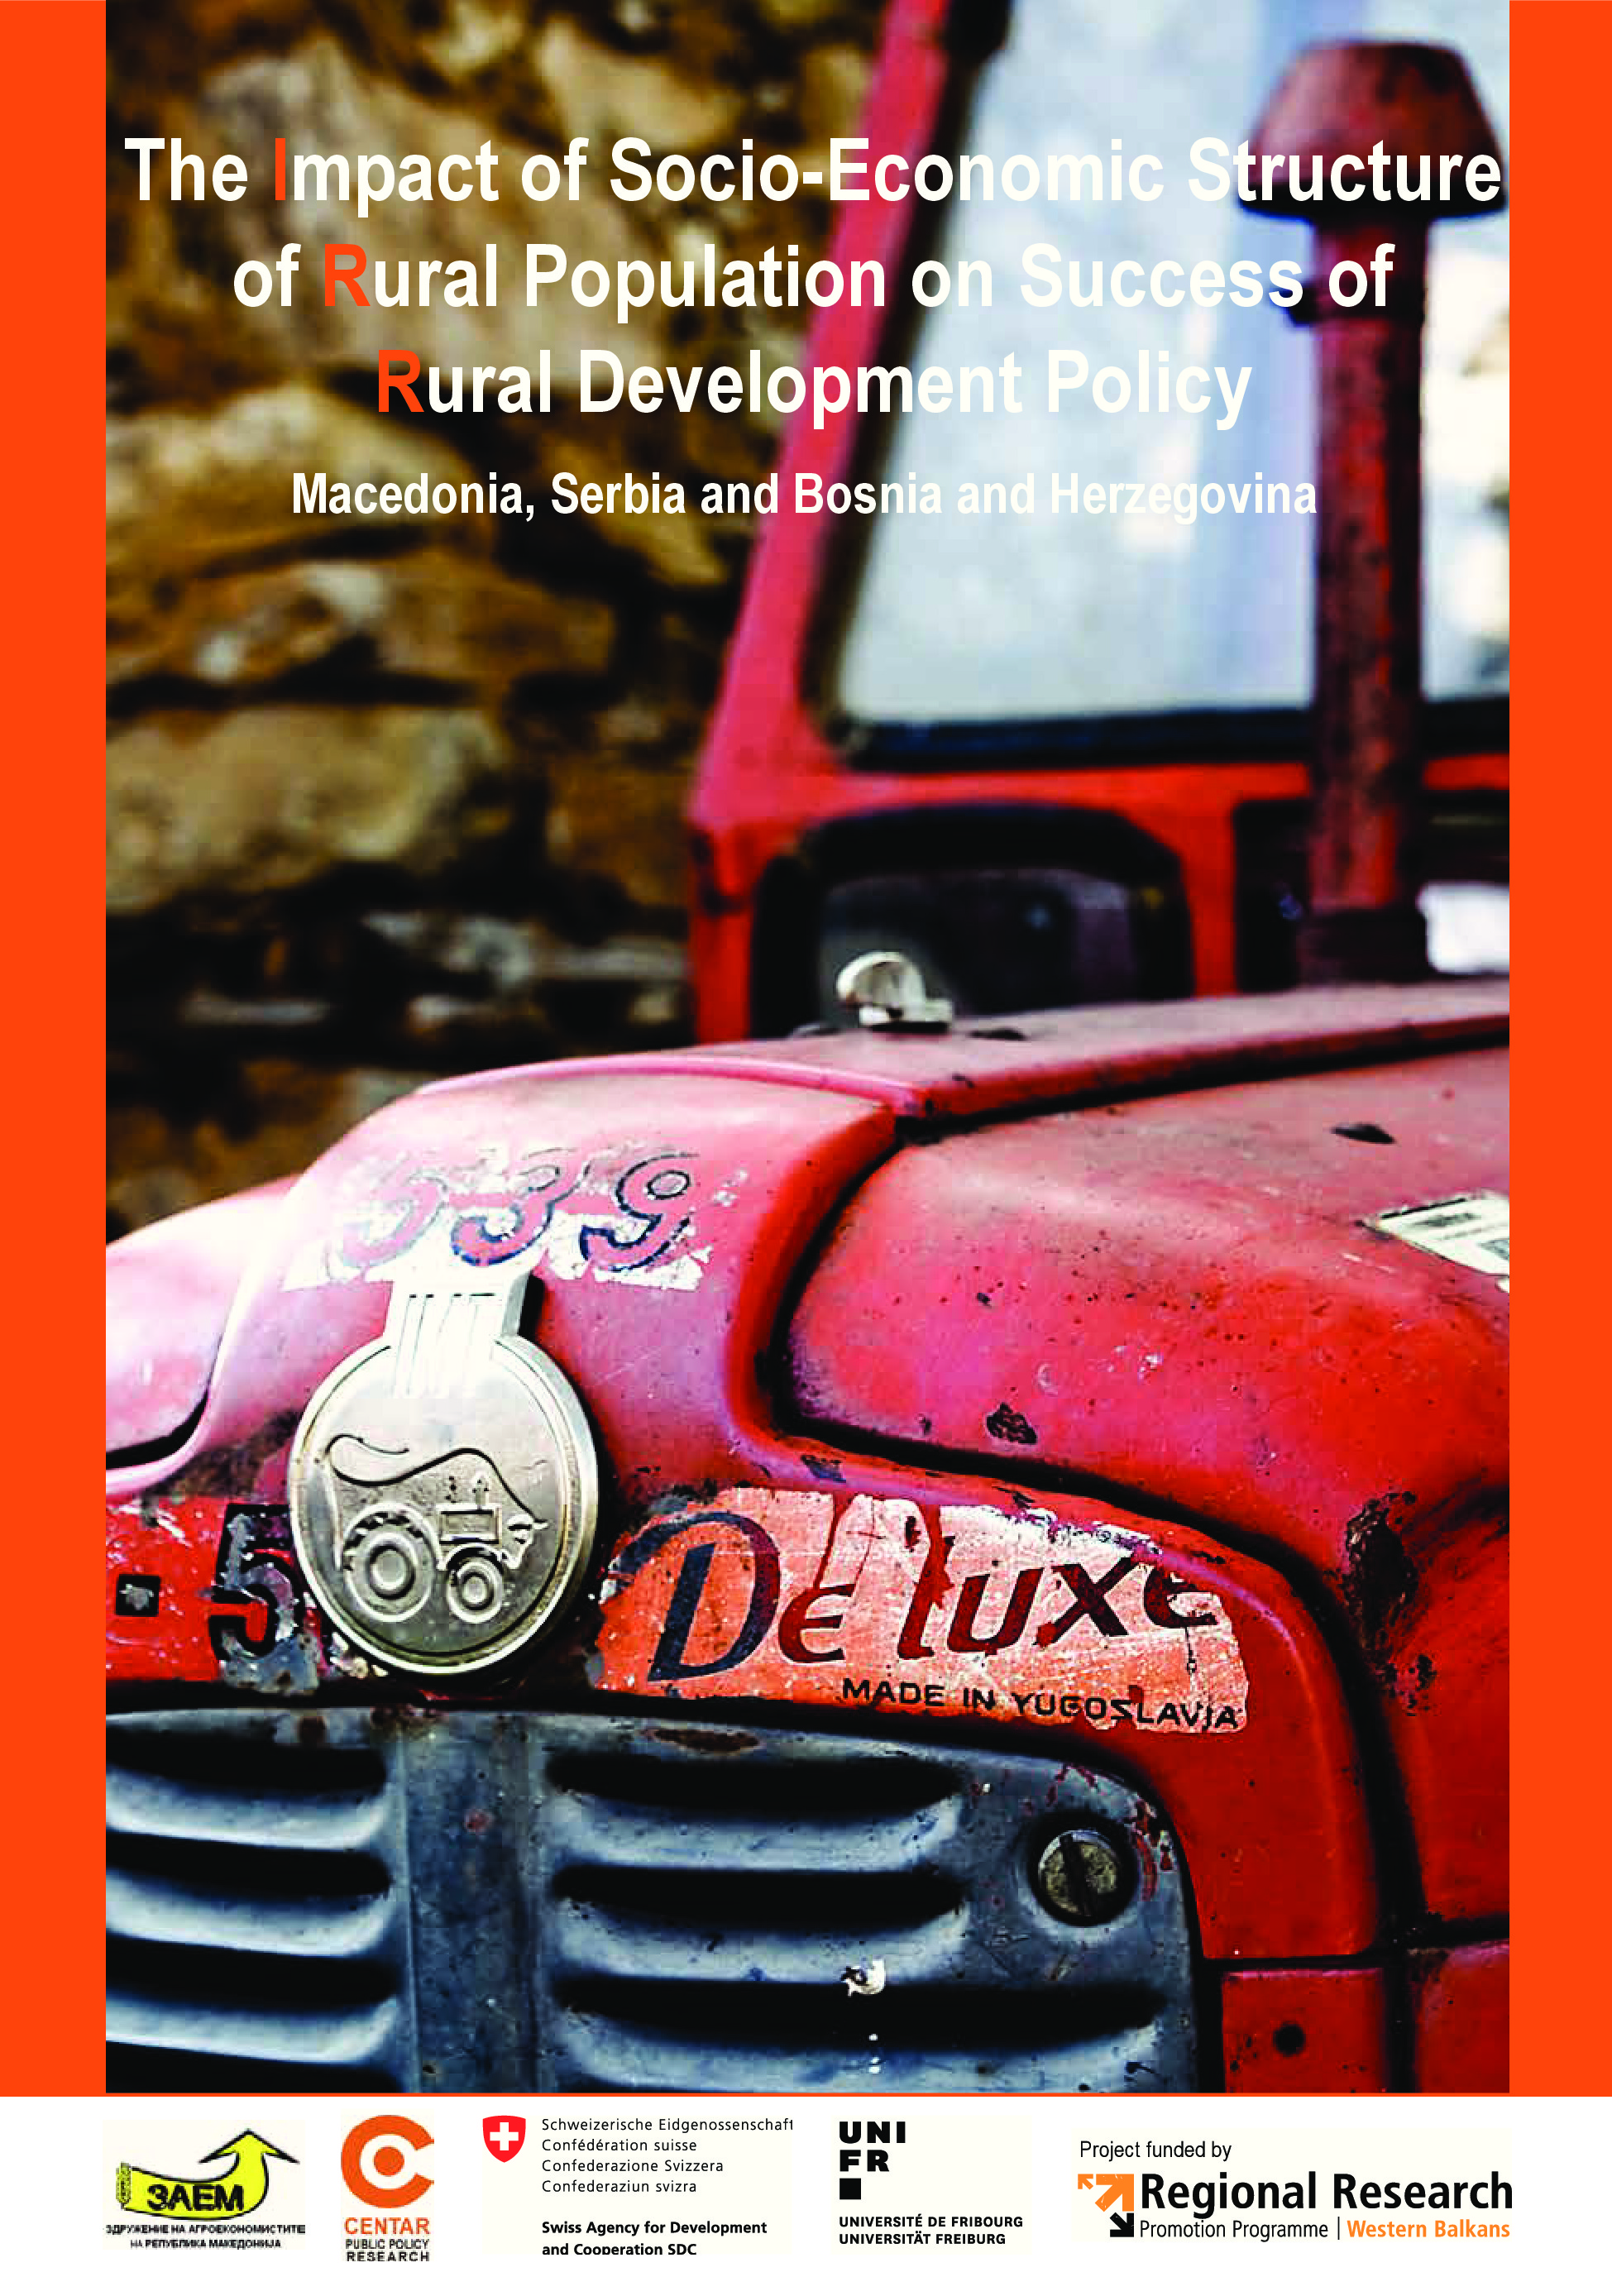 Monografija: “Uticaj socio-ekonomske strukture ruralnog stanovništva na uspeh politike ruralnog razvoja u Makedoniji, Bosni i Hercegovini i Srbiji